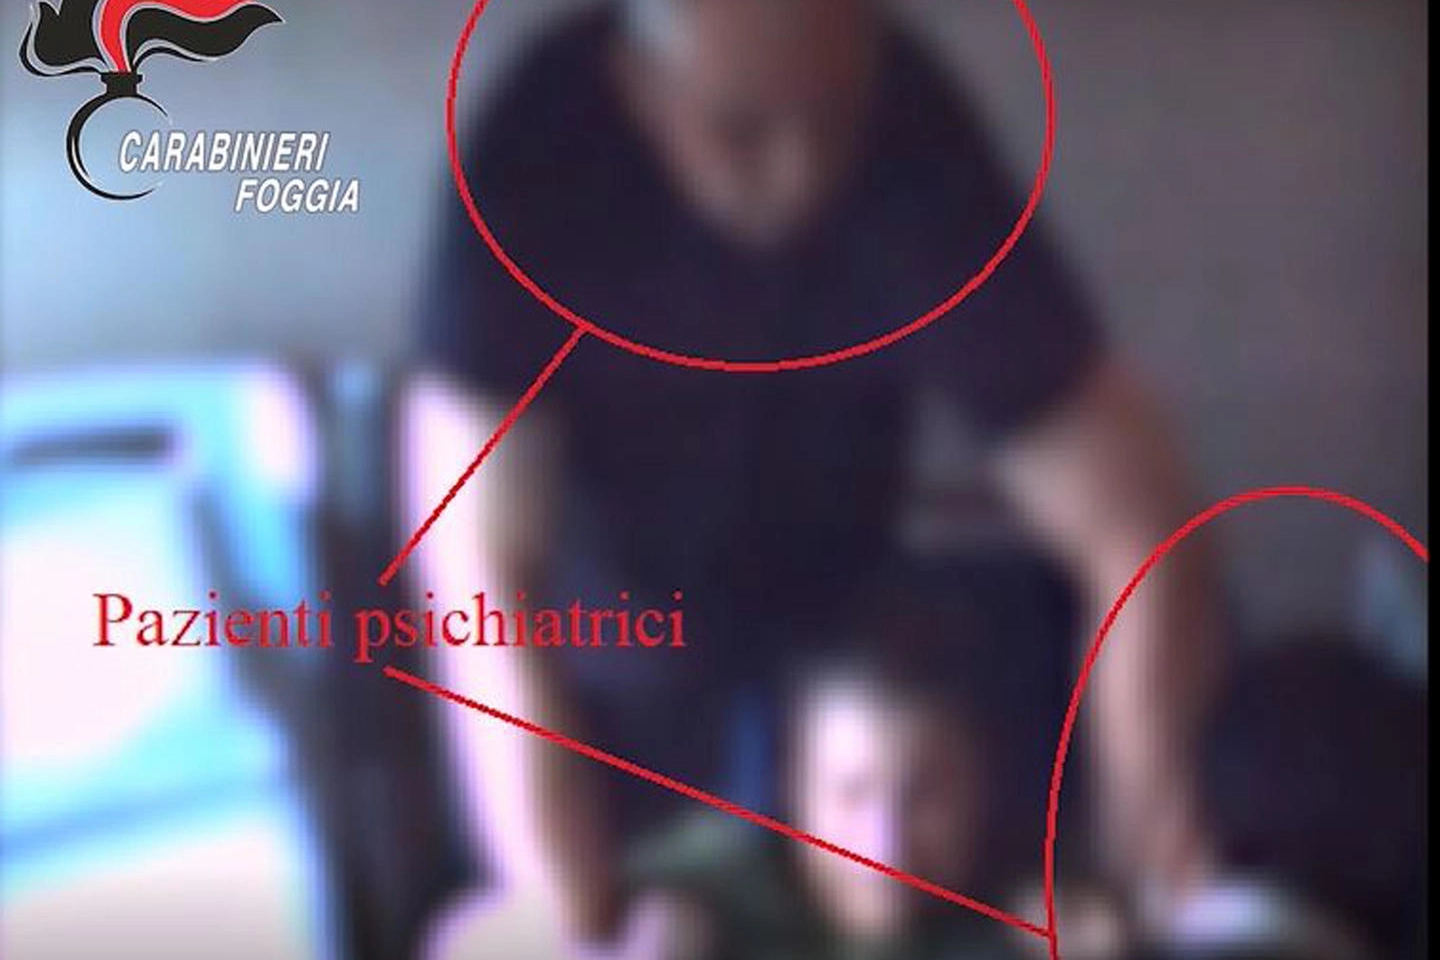 Foggia: un frame del video che documenta le violenze nella struttura psichiatrica